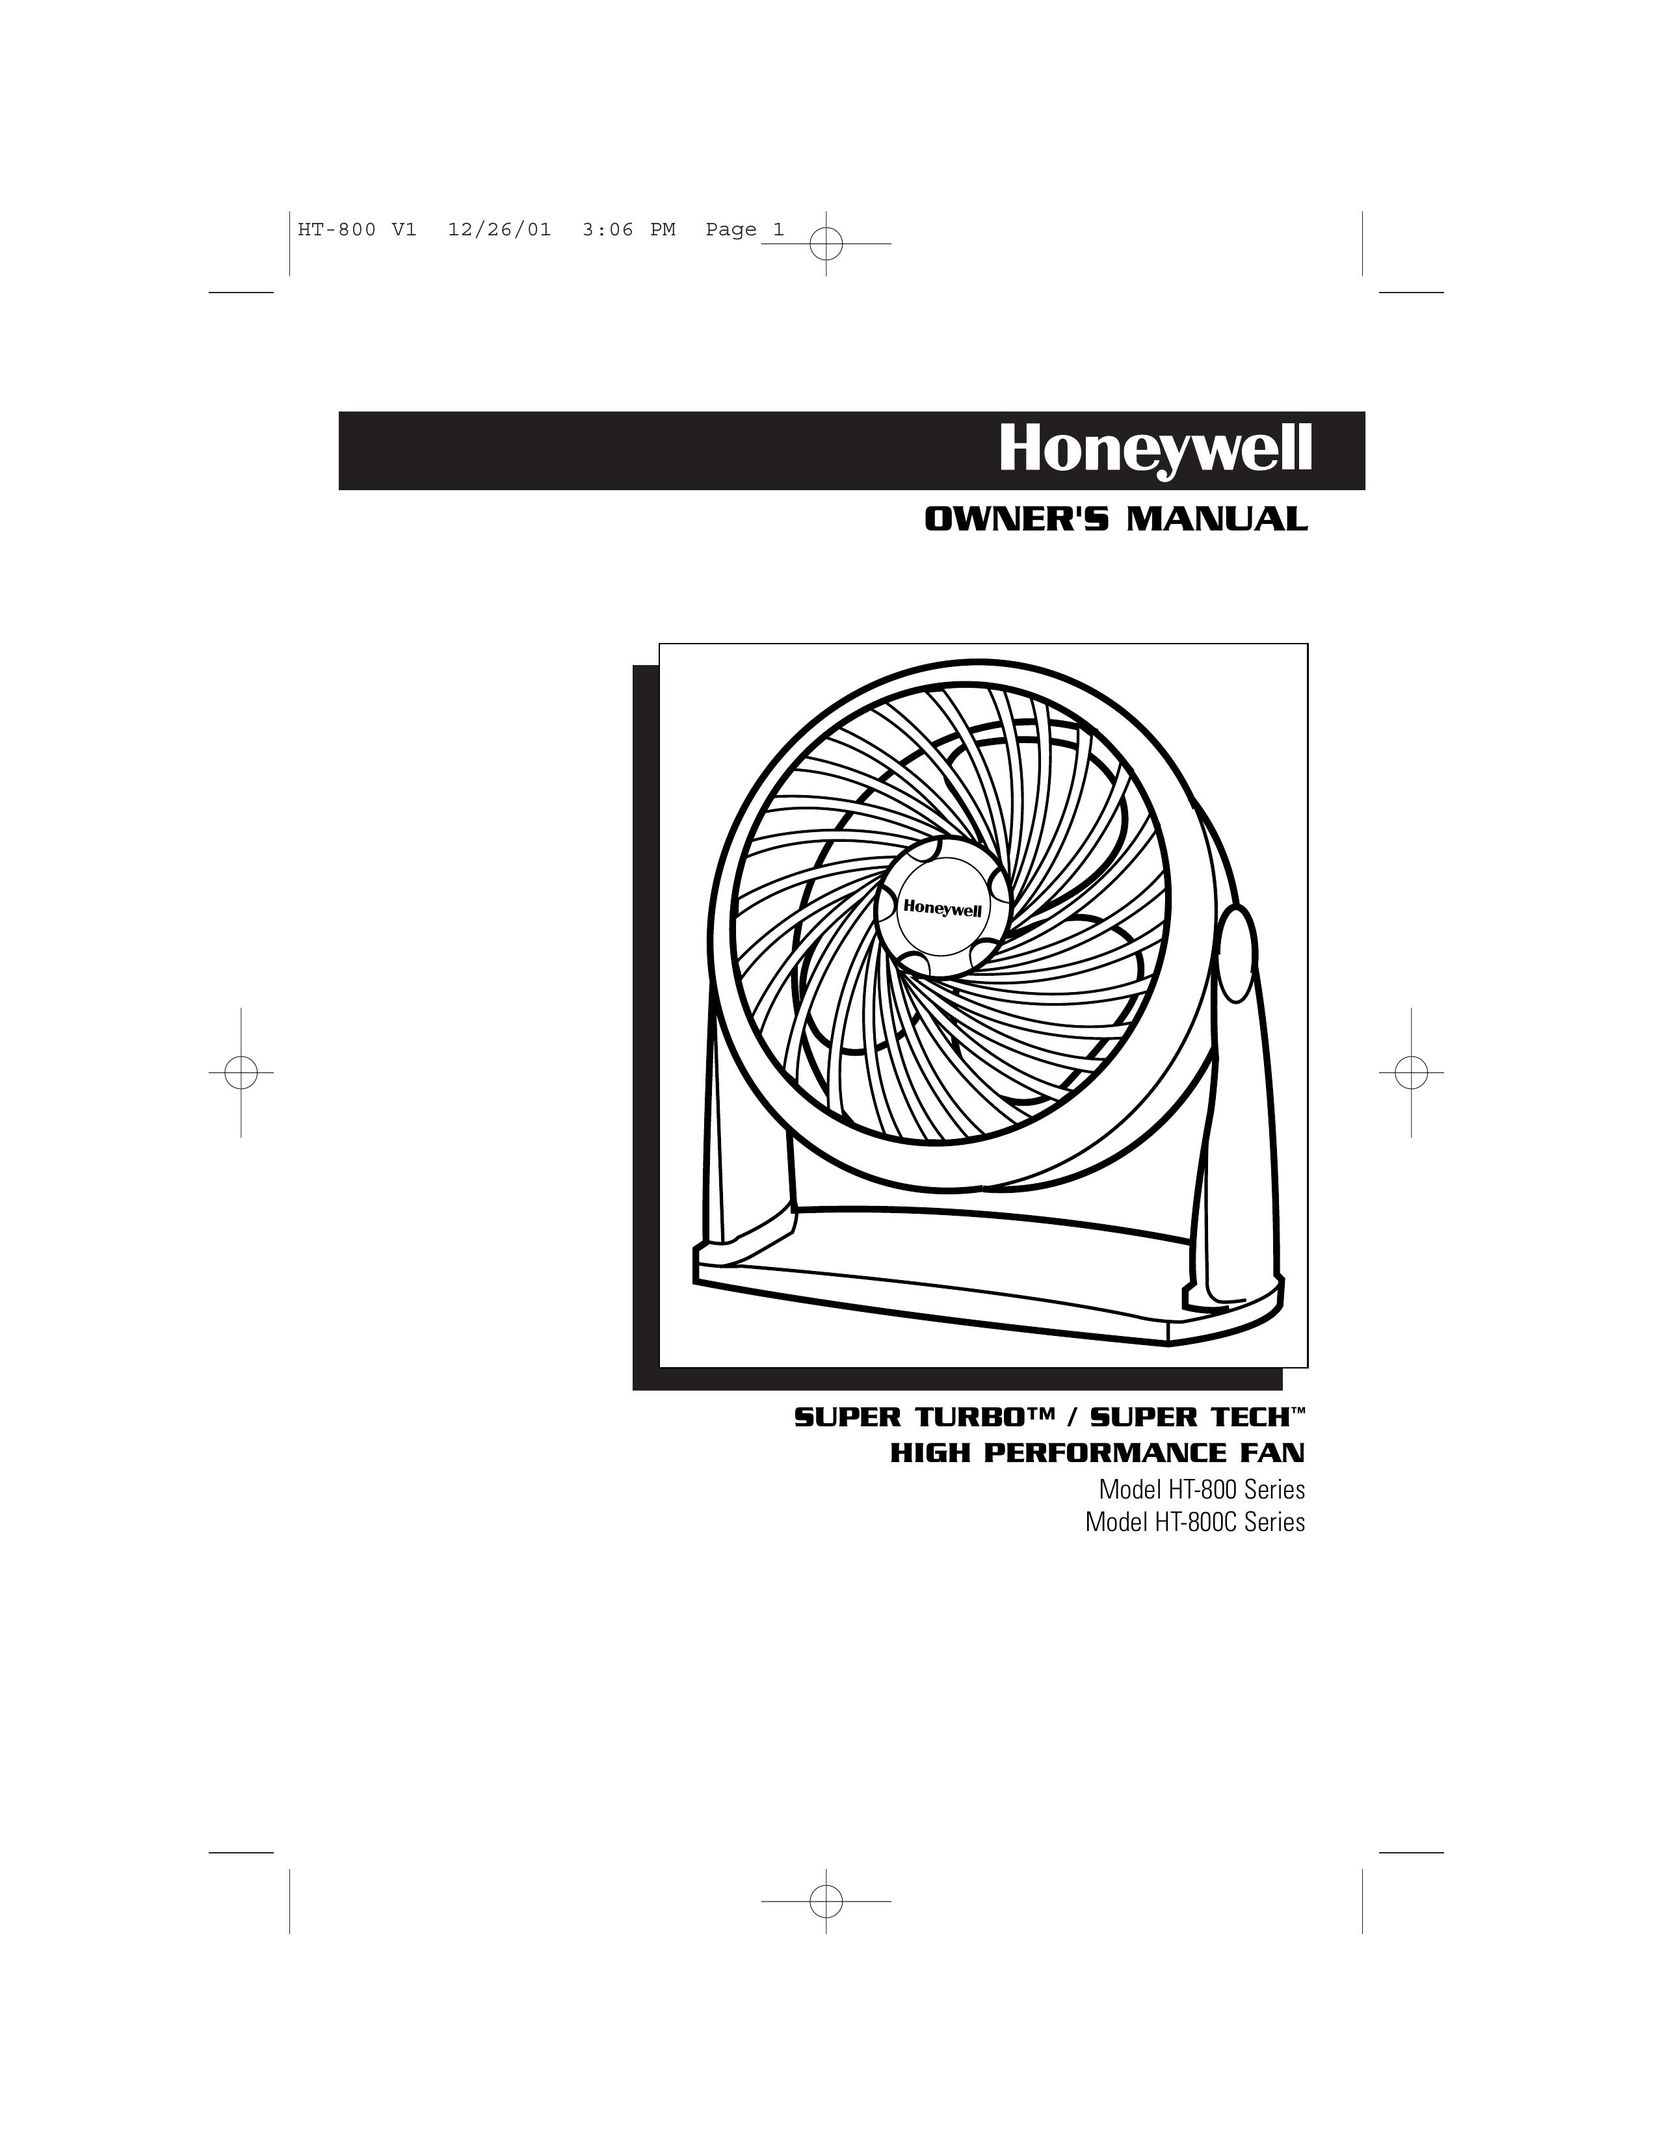 Honeywell HT-800C Fan User Manual